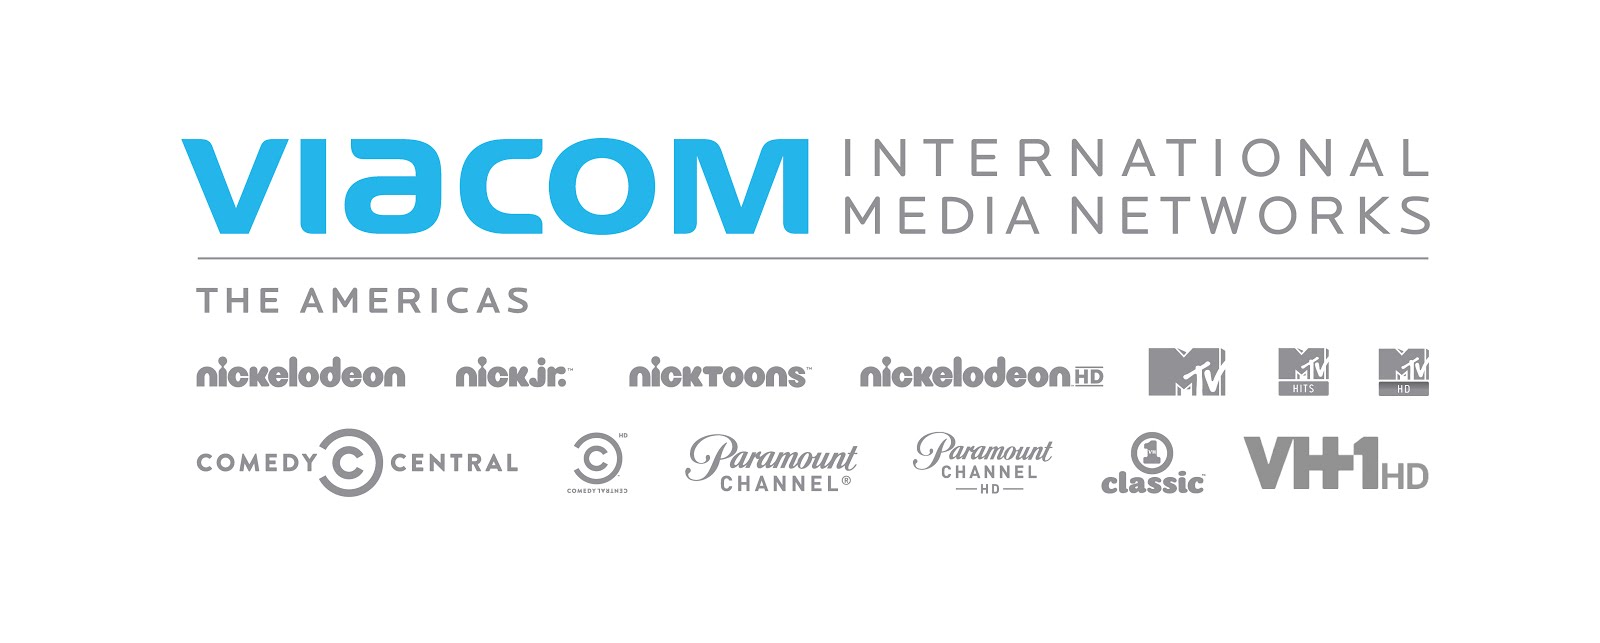 Medium int. Viacom. Viacom International. Viacom Media Networks. Viacom Россия офис.